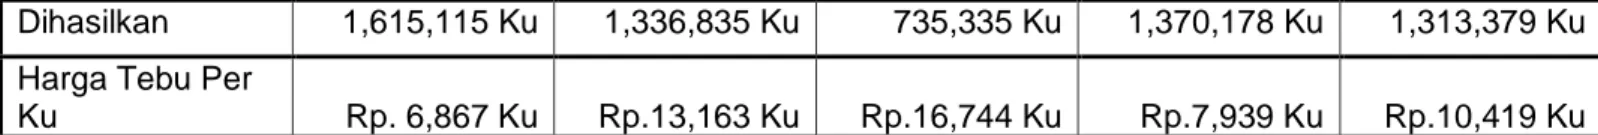 Tabel  V.8,  memperlihatkan  biaya  tebang  dan  angkut  tebu  pada  tahun  2012, 2123, 2014, 2015, 2016 yang terjadi di Pabrik Gula Takalar